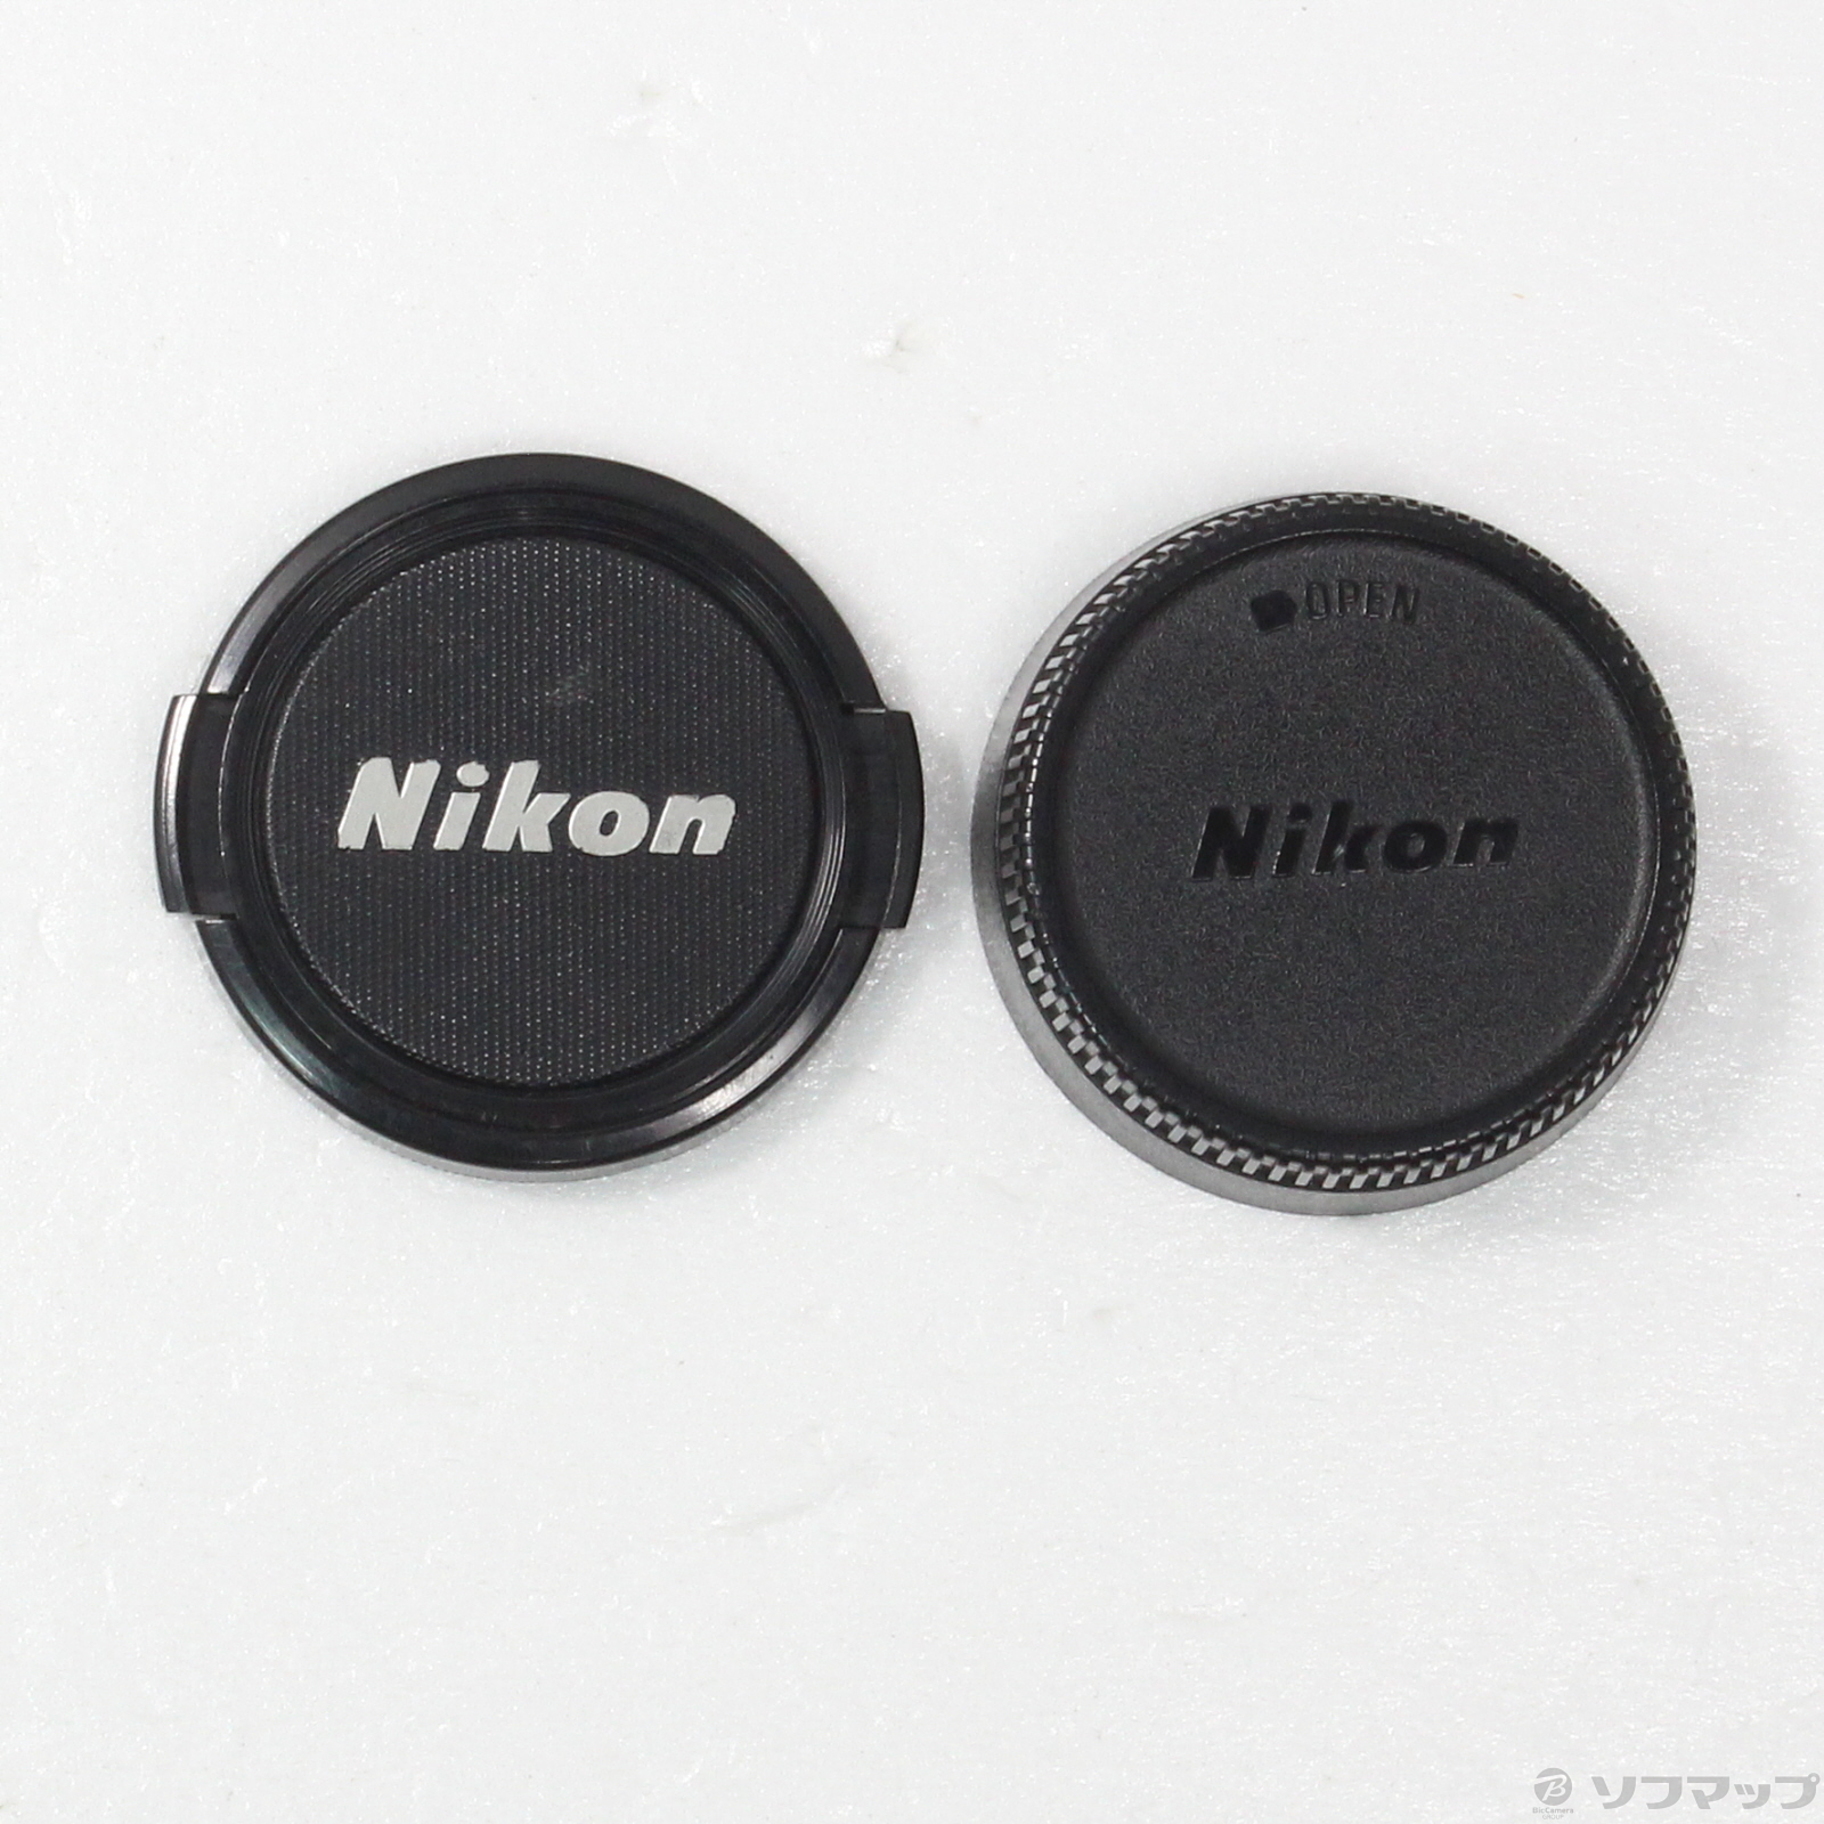 Ai AF Nikkor 50mm F1.4D (レンズ)